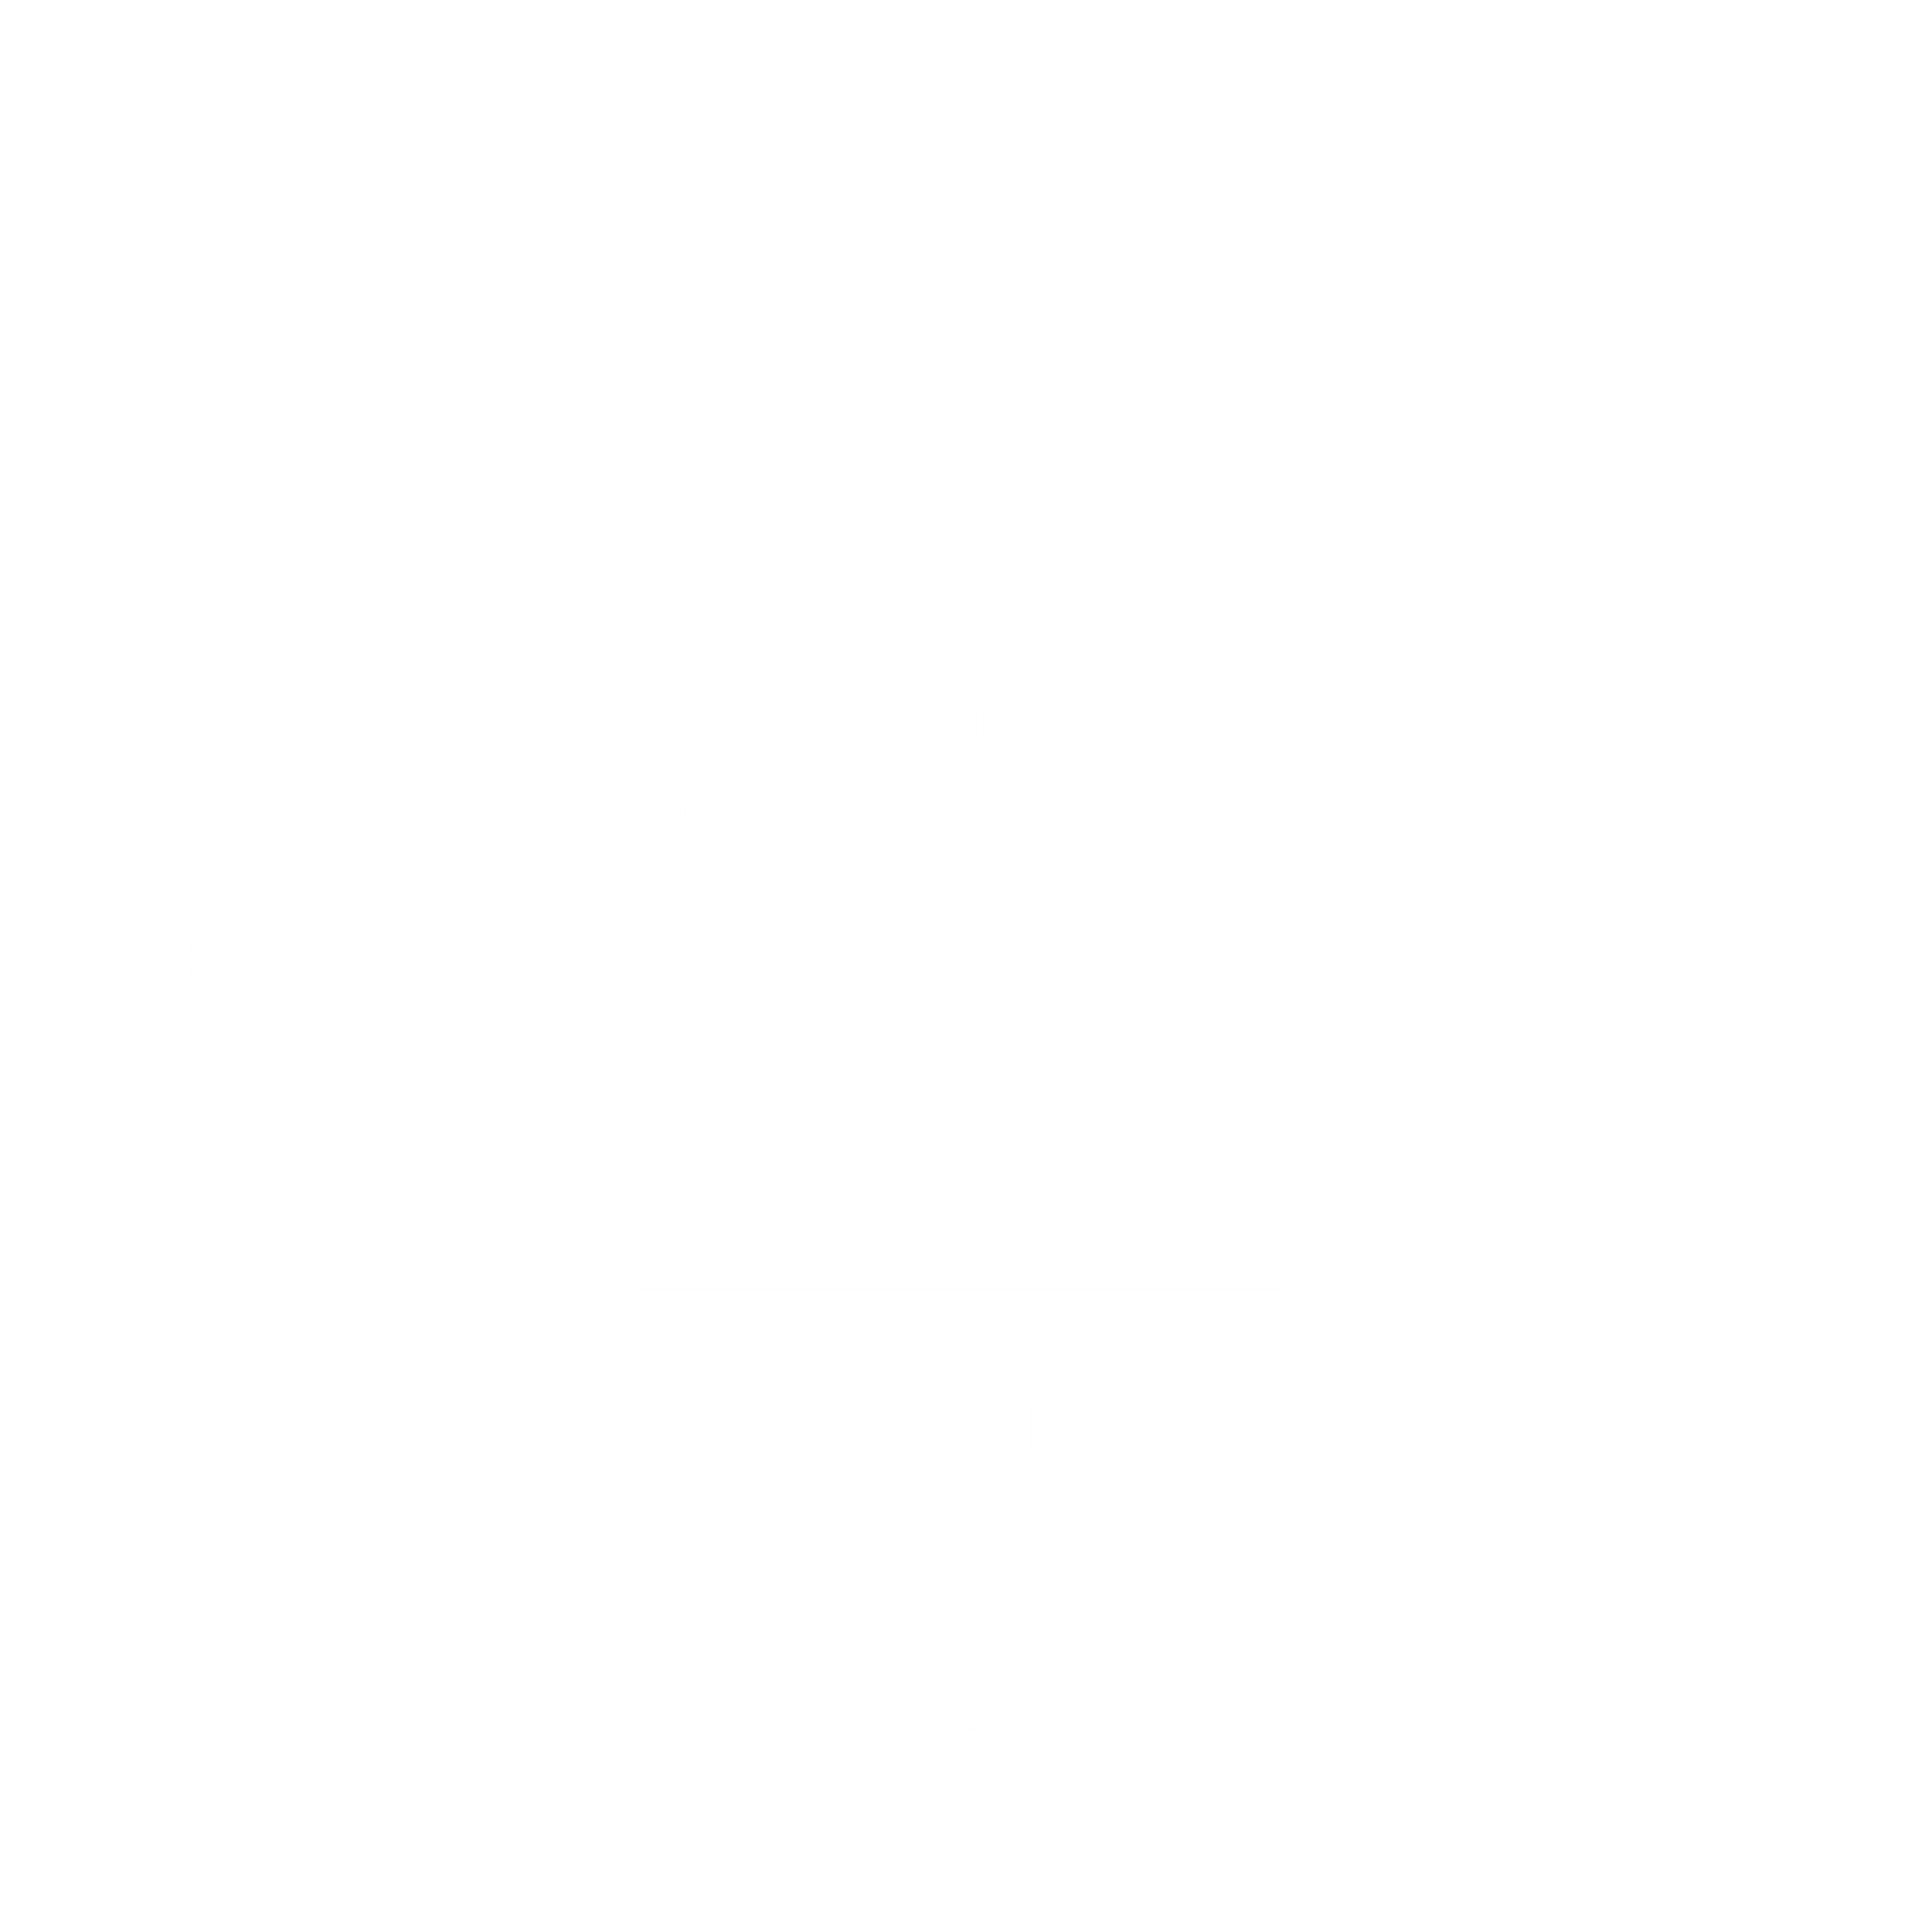 The Mountaineer logo for Pounamu Tourism Group